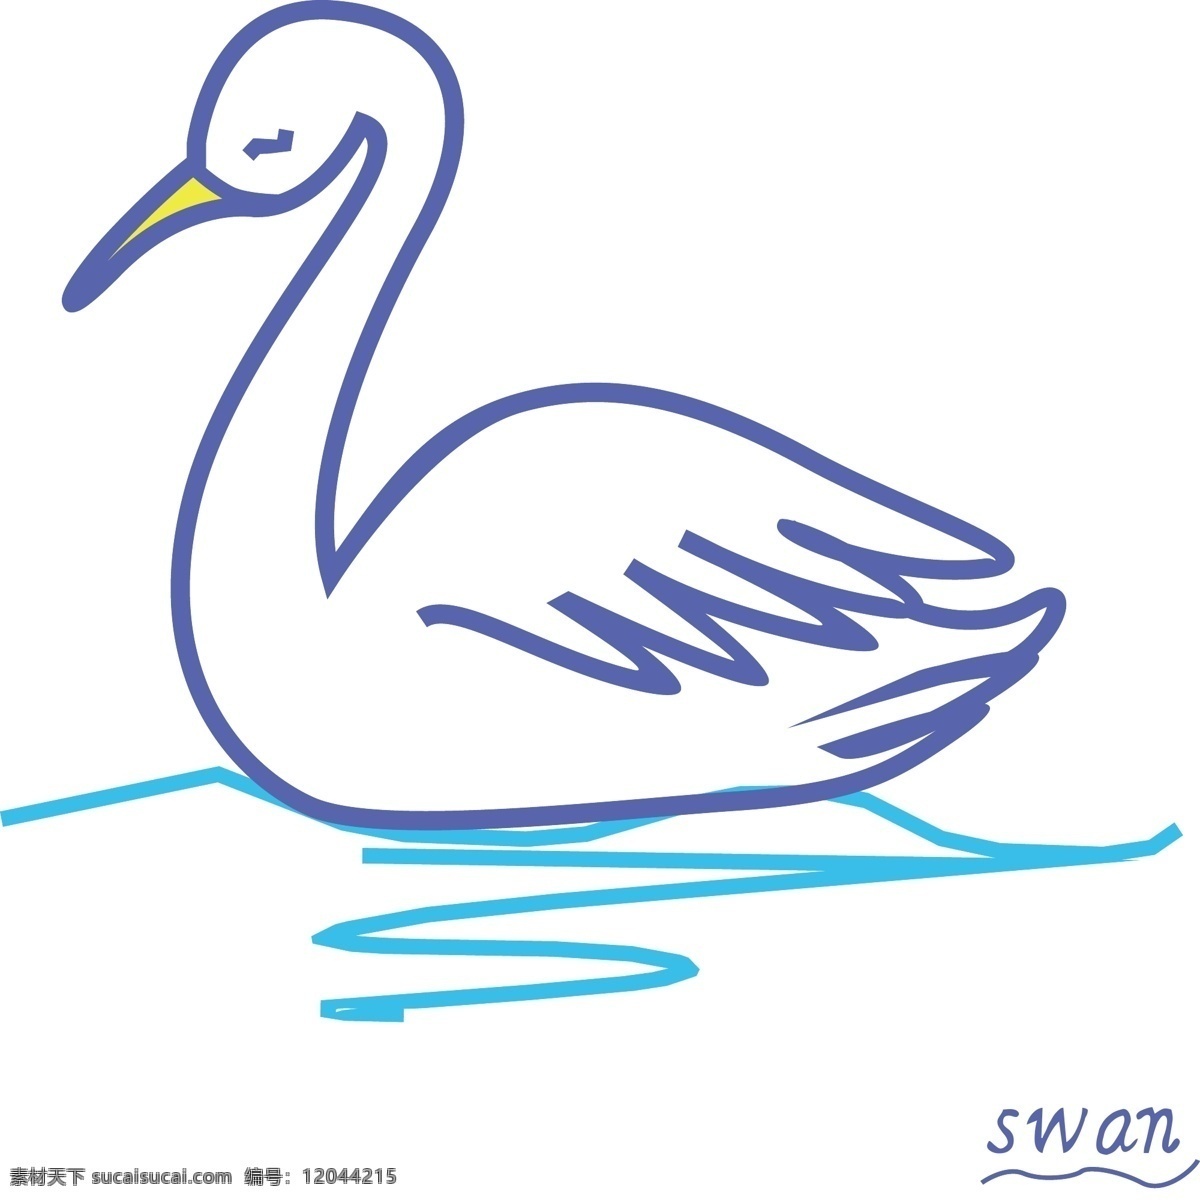 卡通 矢量 天鹅 免 抠 元素 卡通矢量天鹅 手绘天鹅 矢量动物 水流 可爱的 扁平化 动物 飞鸟 优雅的